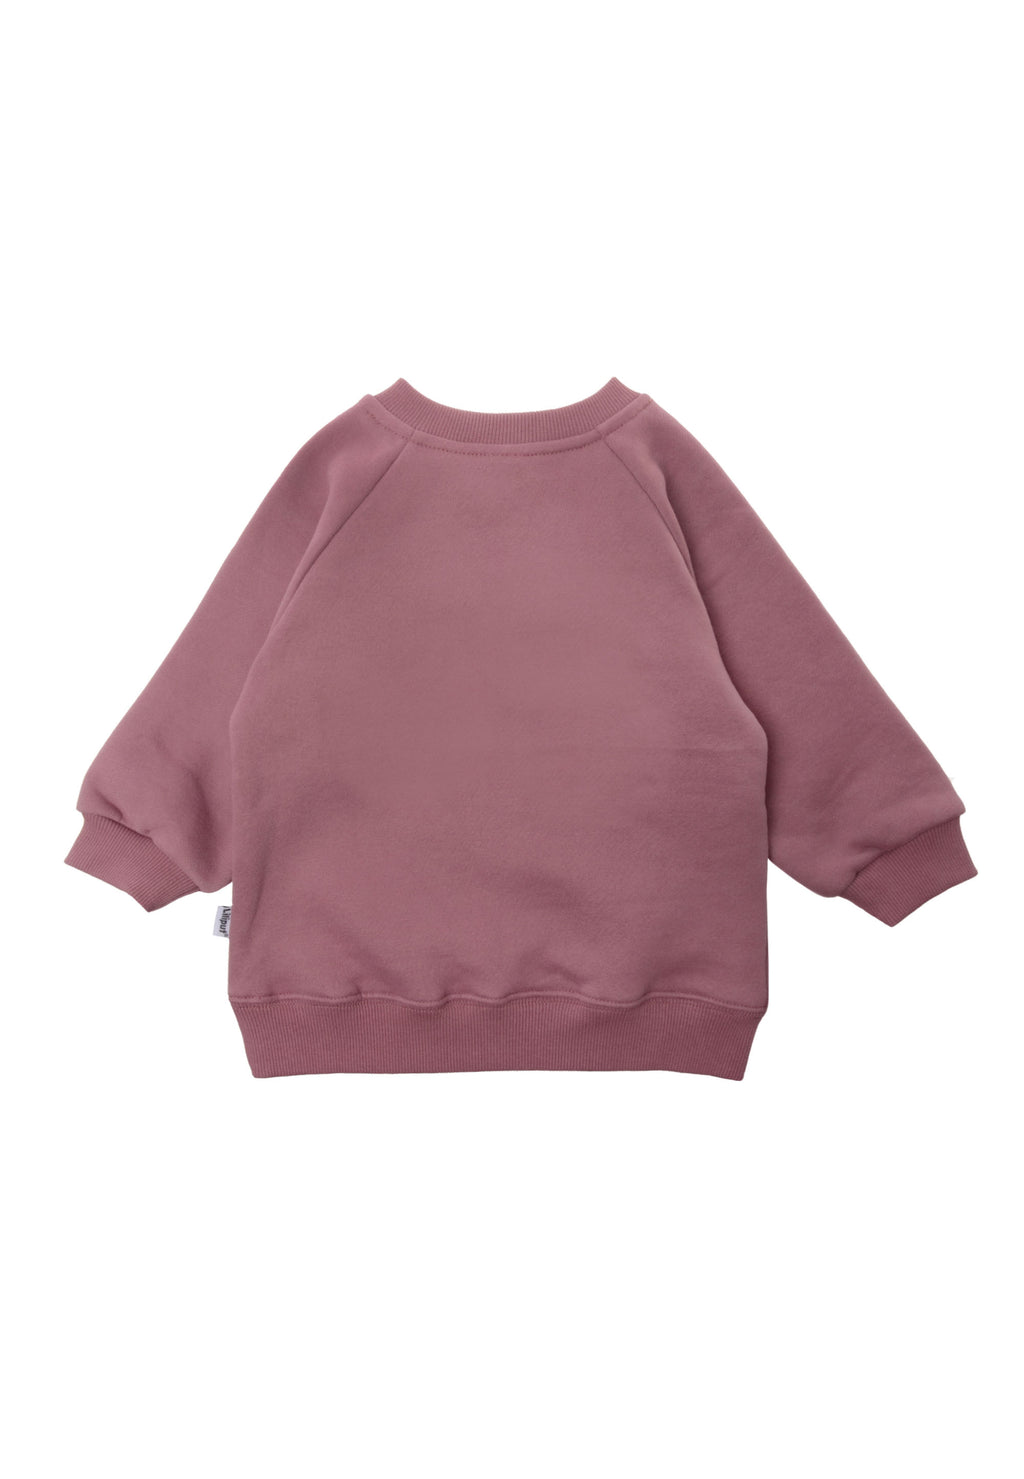 – von rosè für Liliput Sweatshirt in und Niedliches Babys Kleinkinder Liliput